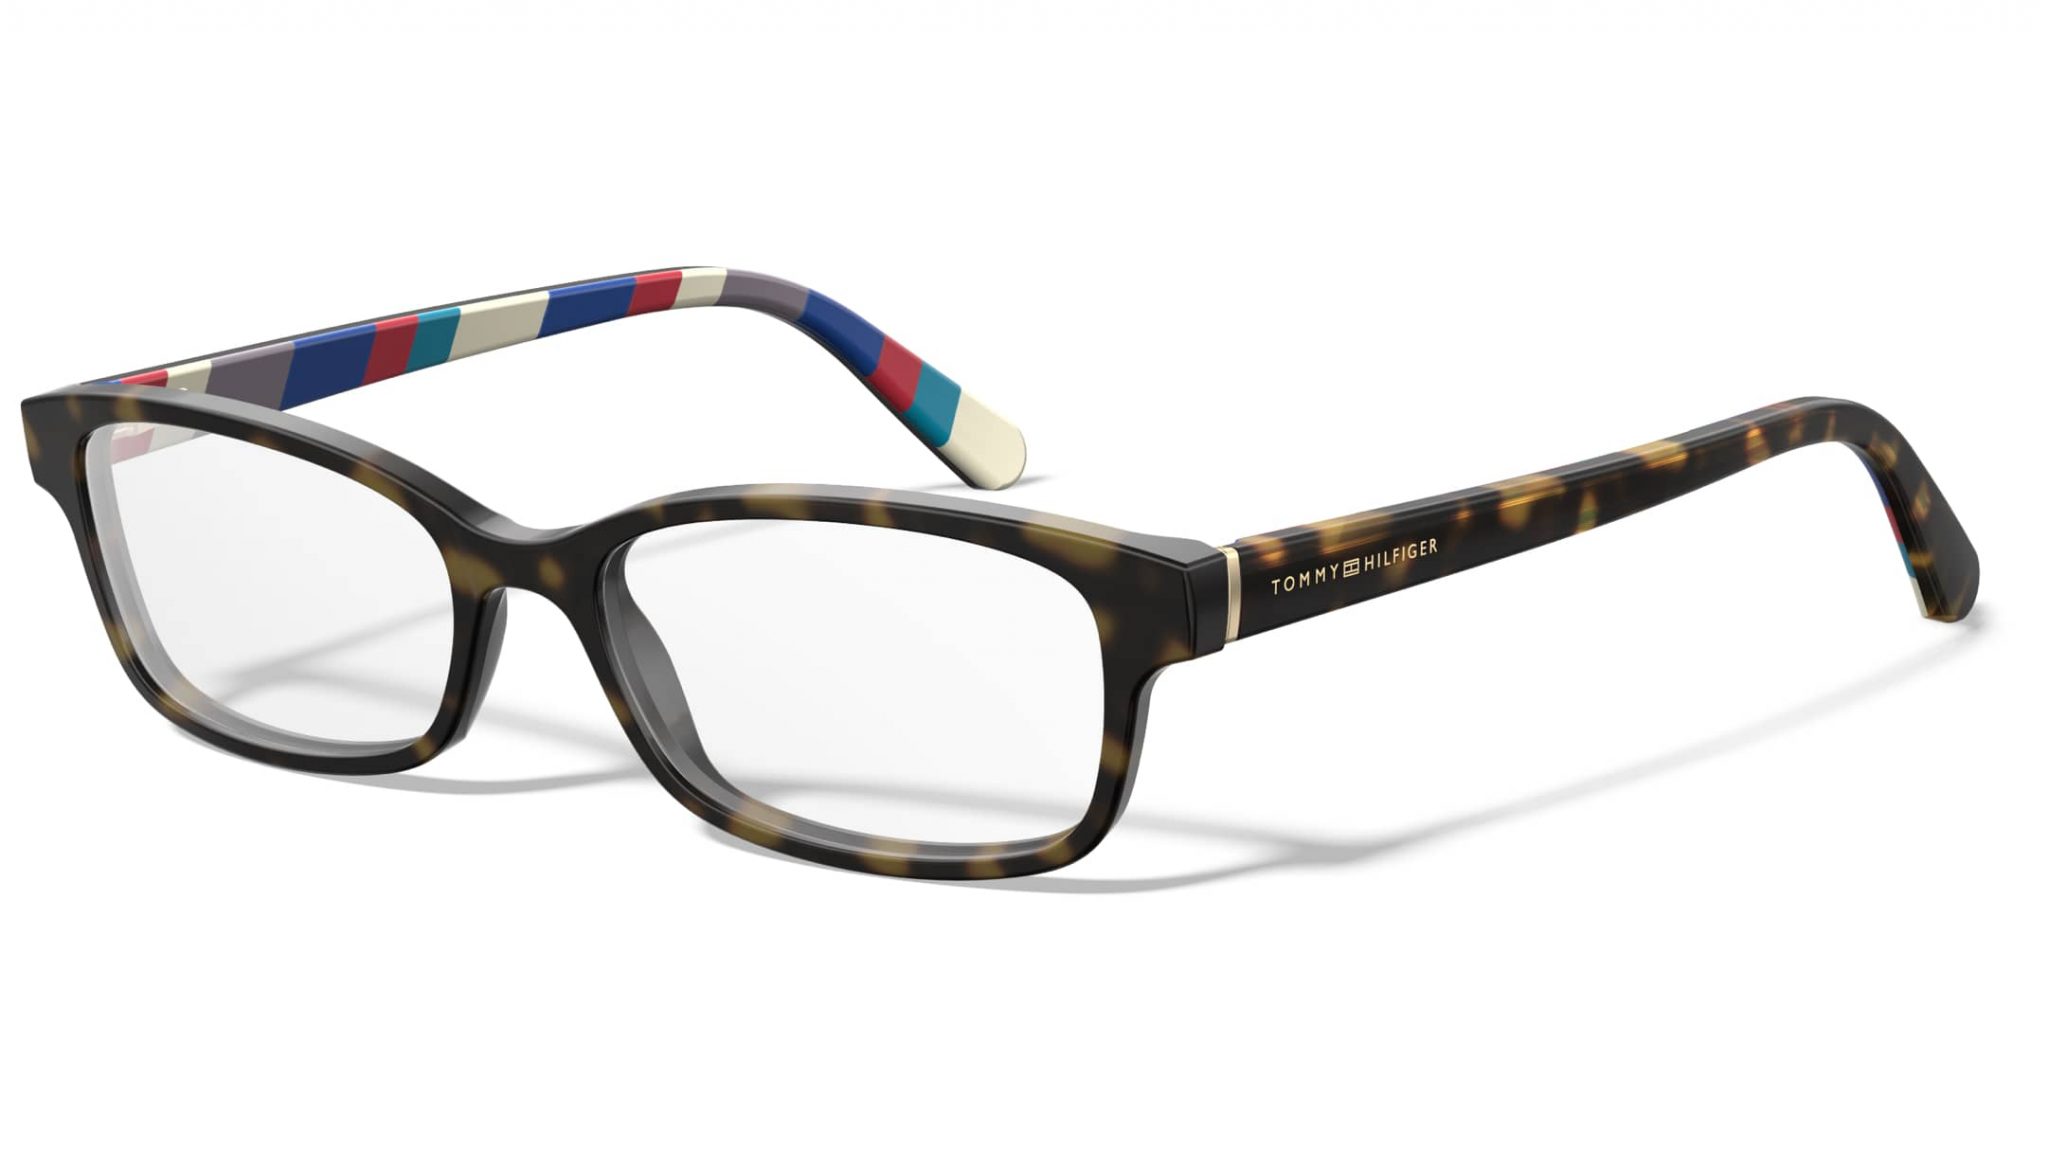 Immagine di modello occhiali 3d con esempio di realtà aumentata fashion